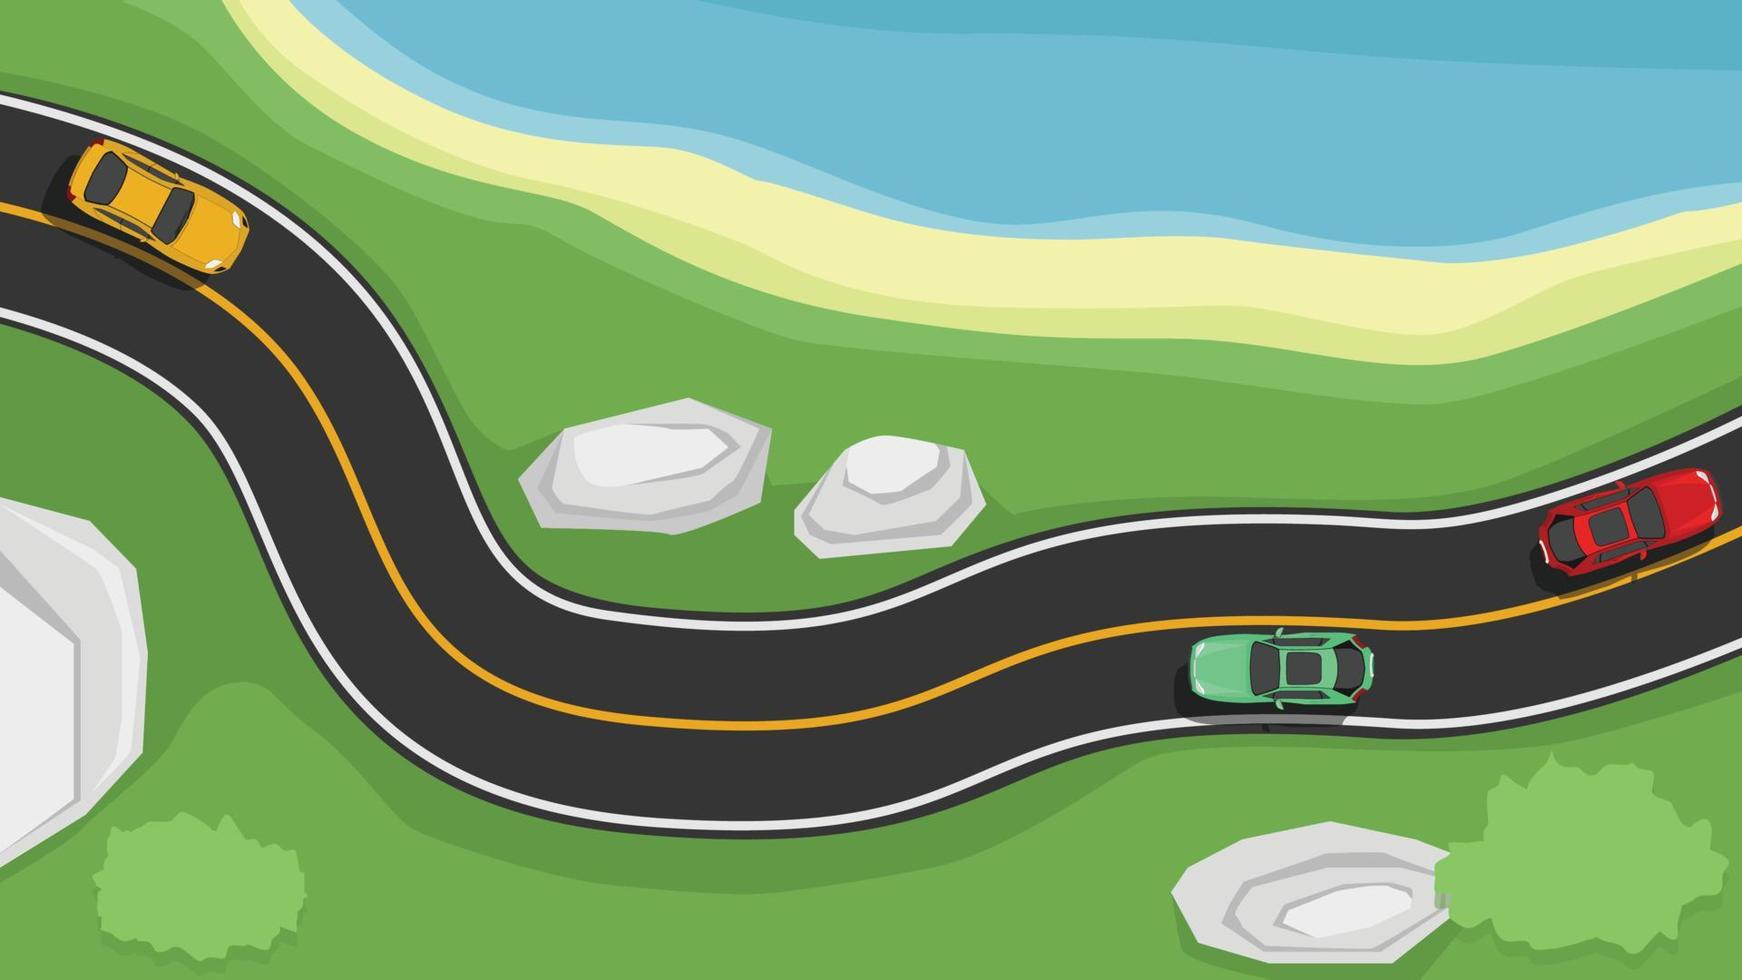 vector o ilustración de la vista anterior de la carretera asfaltada con línea blanca y amarilla. camino curvo junto a la playa con piedra y hierba verde. con coches conduciendo para viajar por la carretera asfaltada.